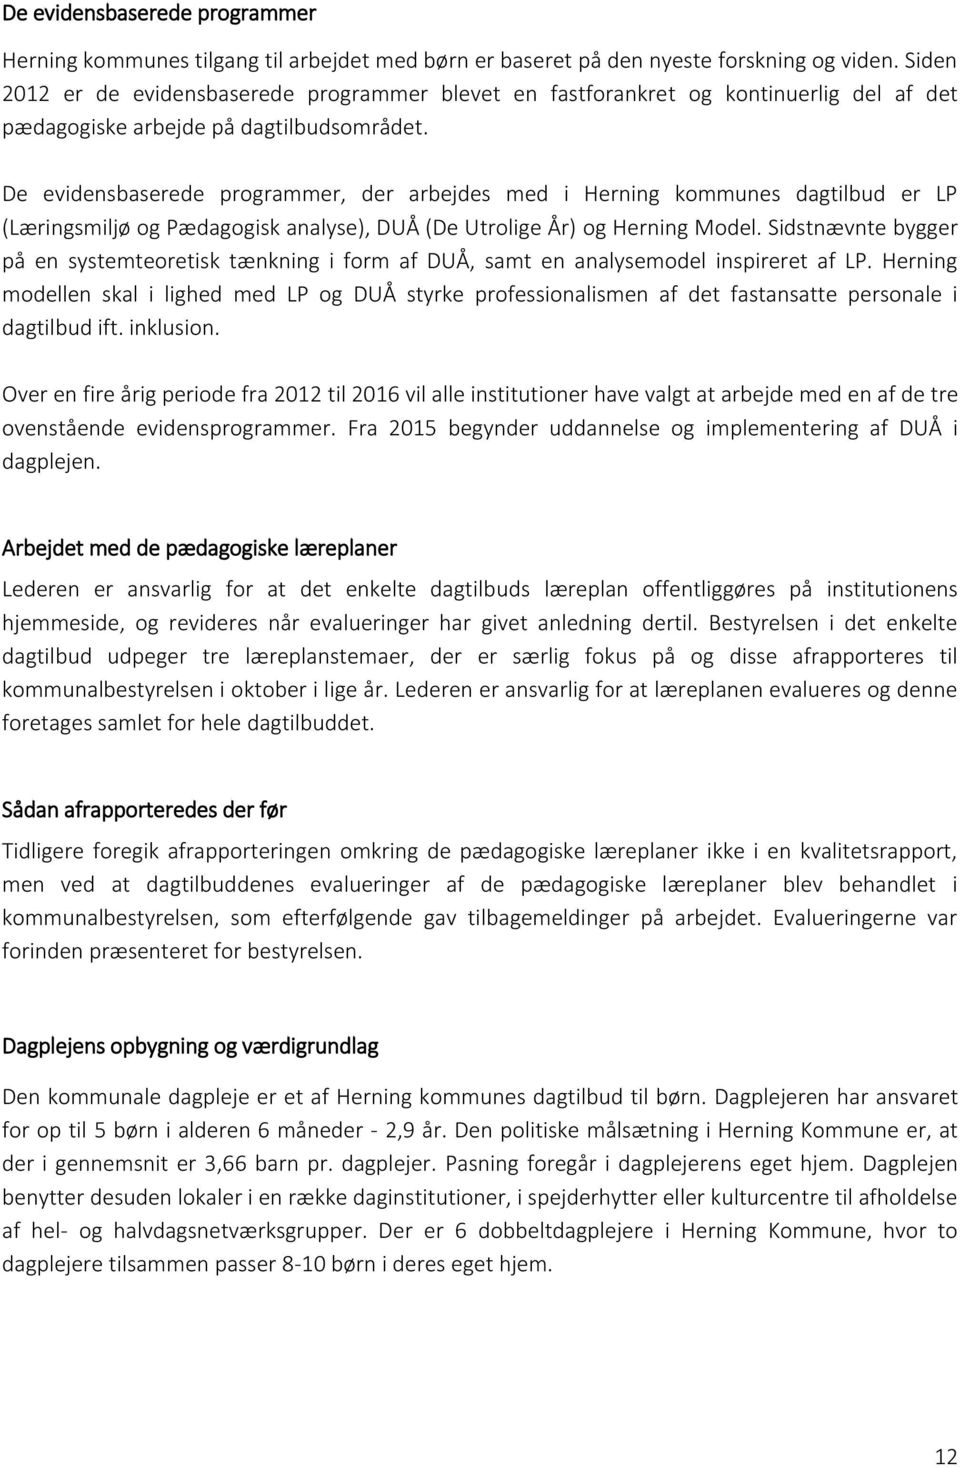 De evidensbaserede programmer, der arbejdes med i Herning kommunes dagtilbud er LP (Læringsmiljø og Pædagogisk analyse), DUÅ (De Utrolige År) og Herning Model.